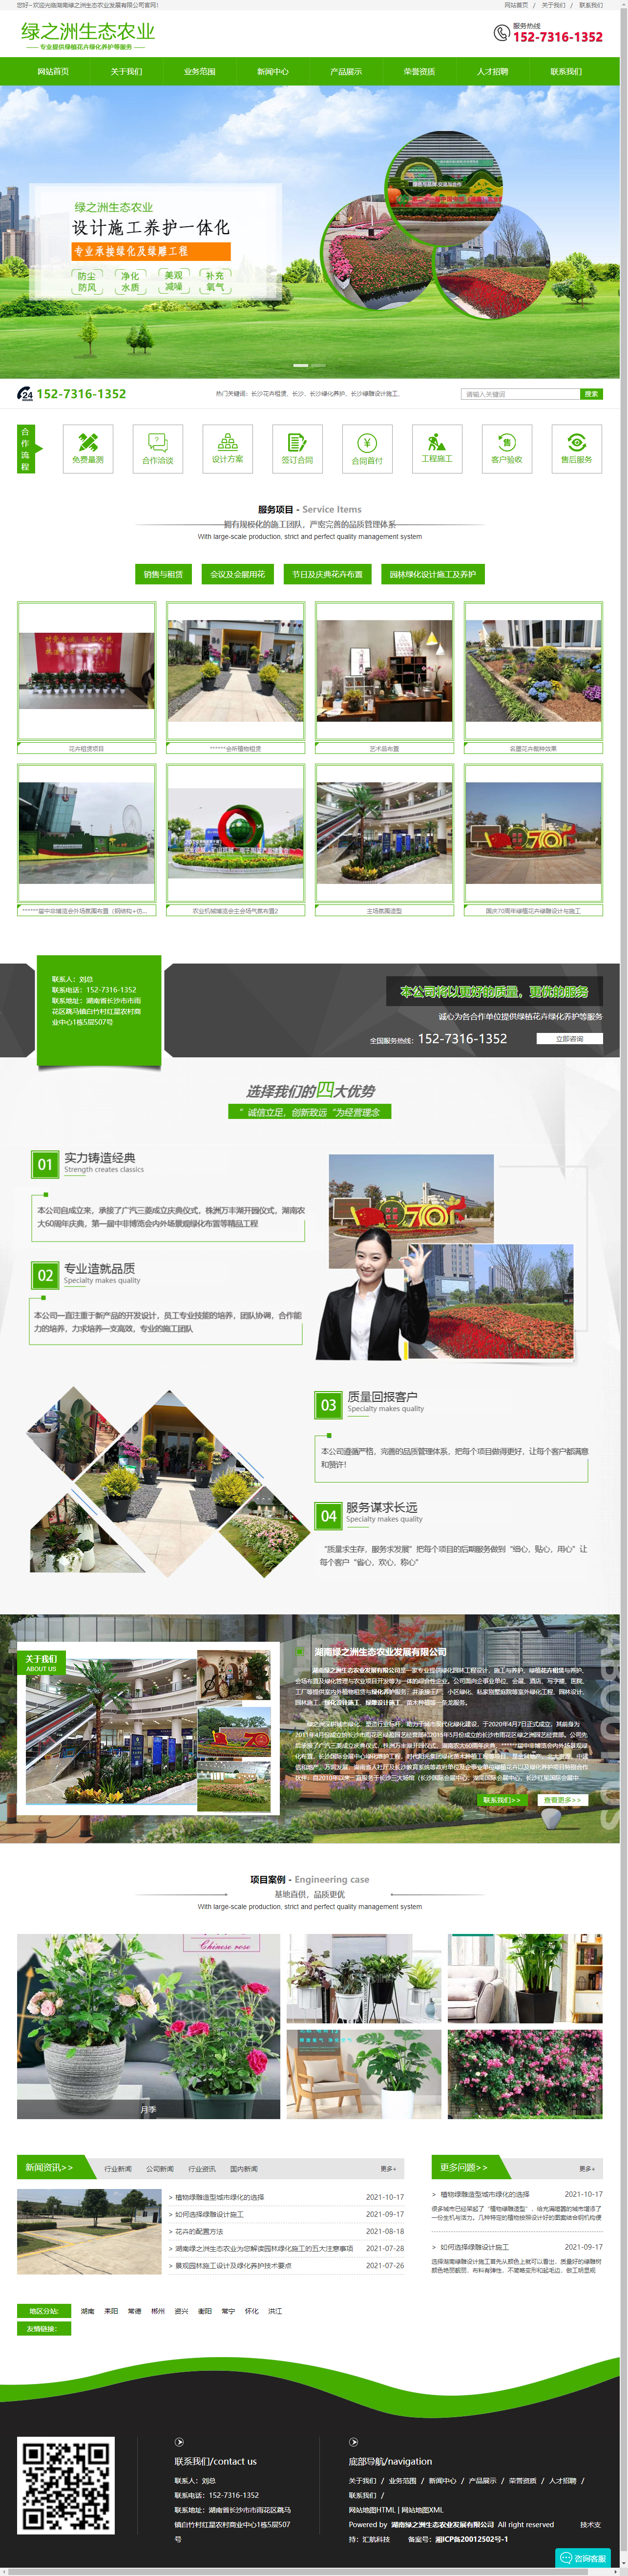 湖南绿之洲生态农业发展有限公司网站案例